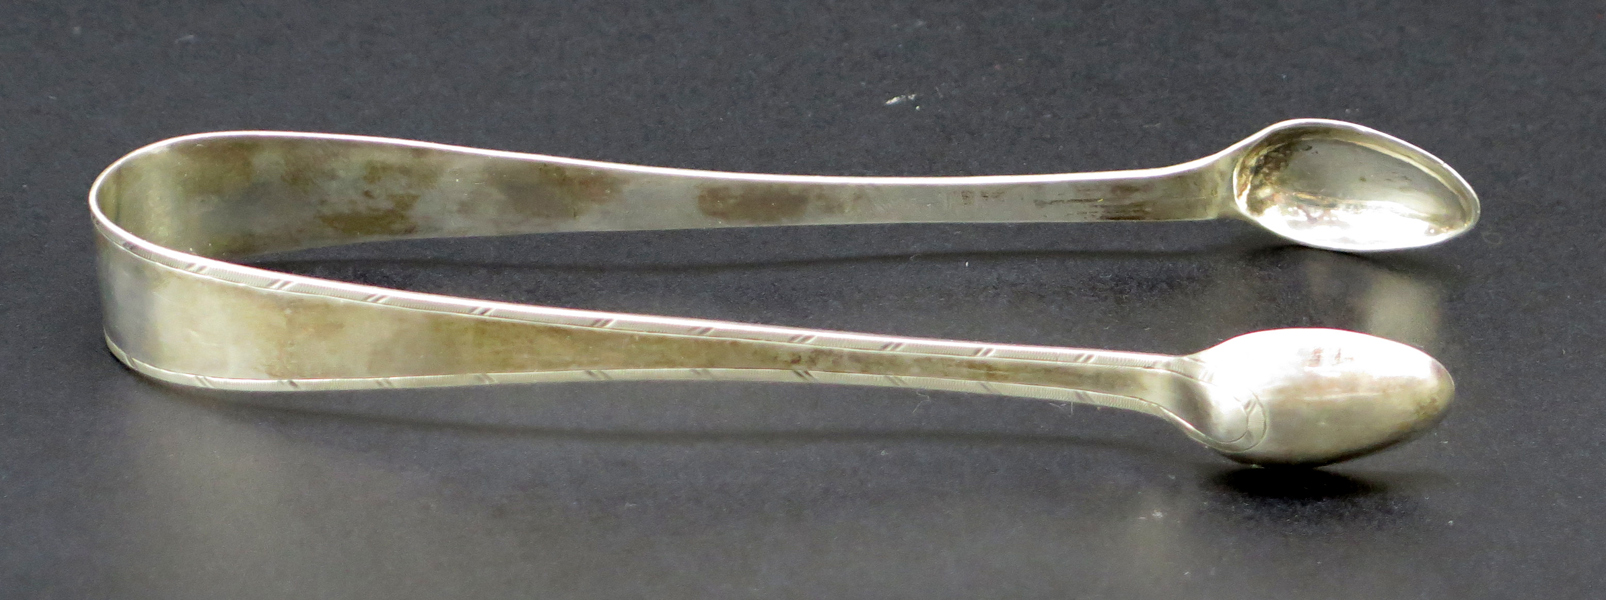 Sockertång, silver, sengustaviansk, stämplar Nils Tornberg Linköping 1802, l 14,5 cm, vikt 30 gram_29126a_8db6fe74e92147b_lg.jpeg